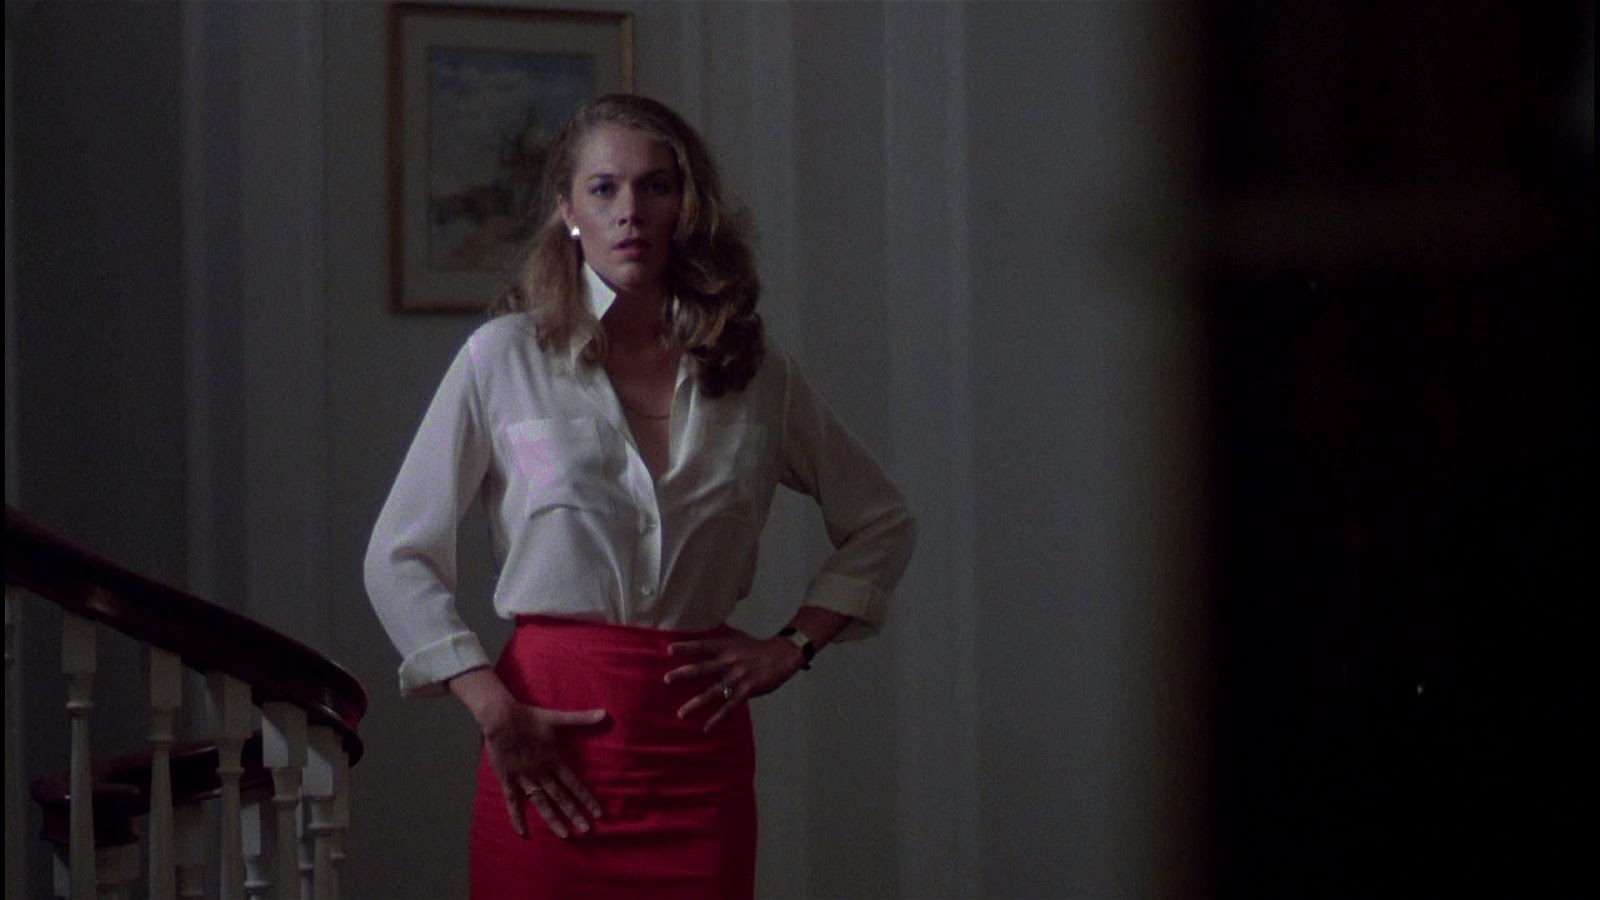 Movie Lovers Reviews: Body Heat (1981) - Kathleen Turner ...